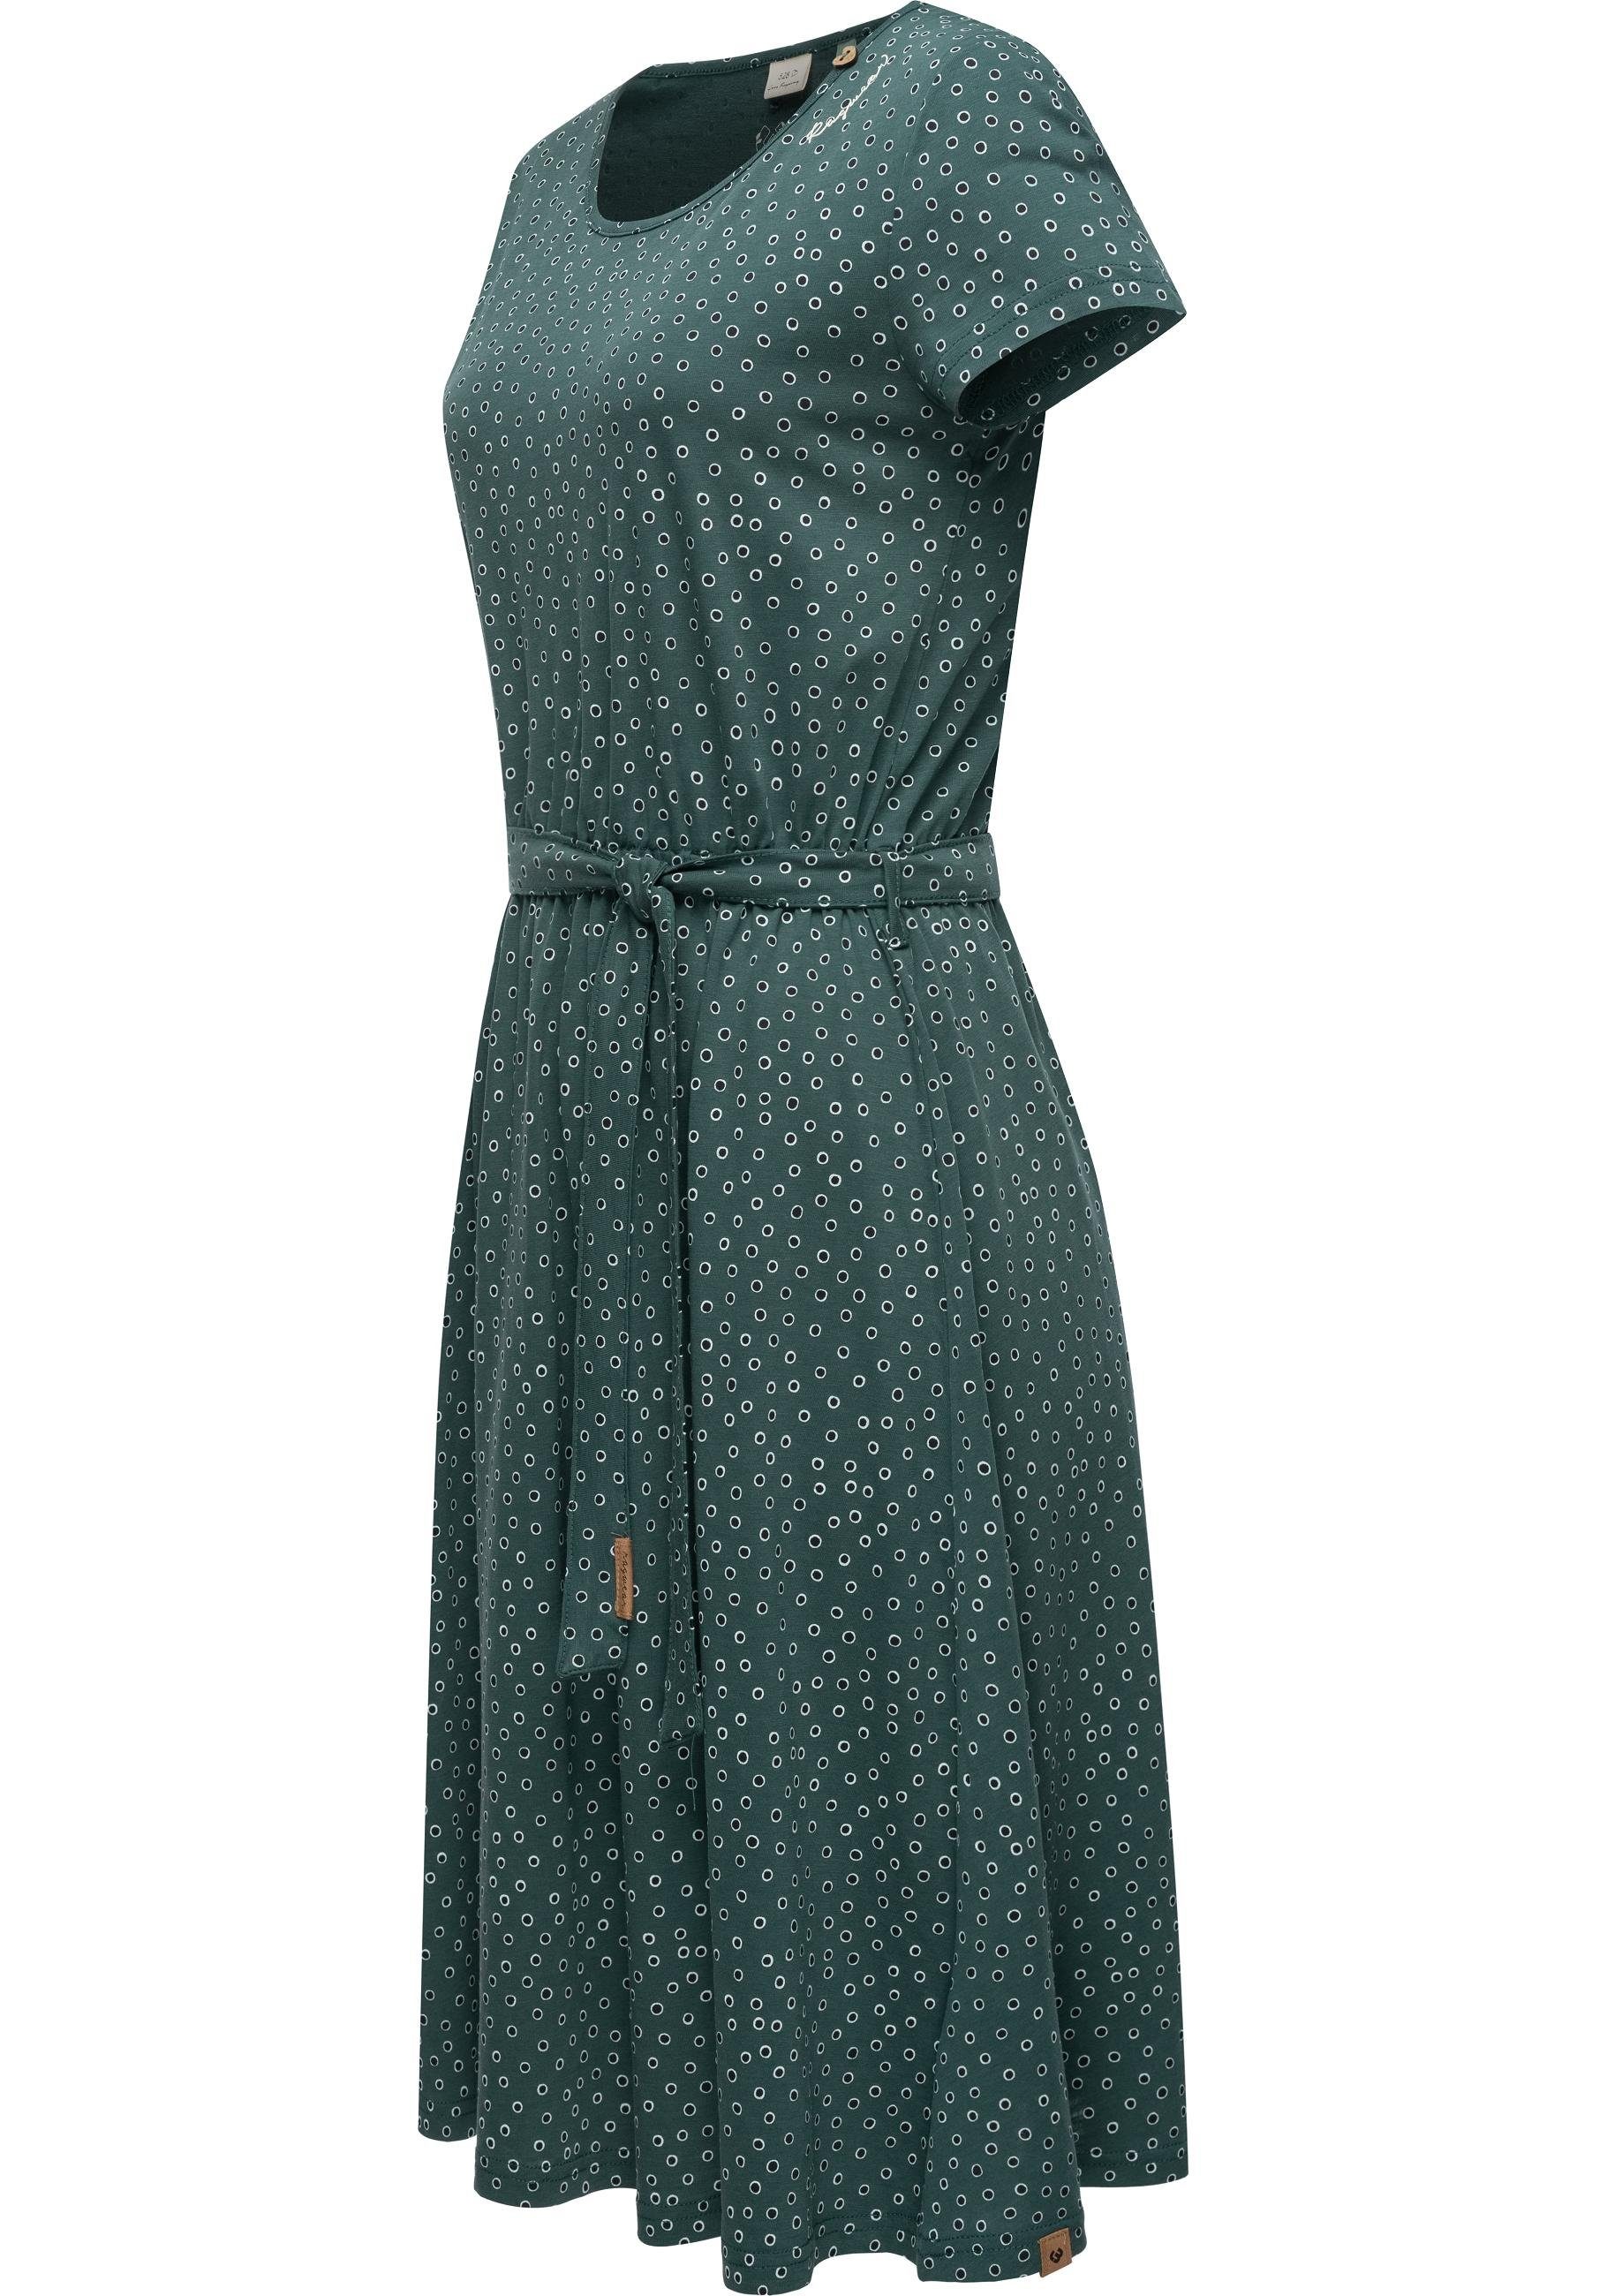 Ragwear Shirtkleid stylisches Print mit dunkelgrün Gürtel und Dress Olina Organic Sommerkleid